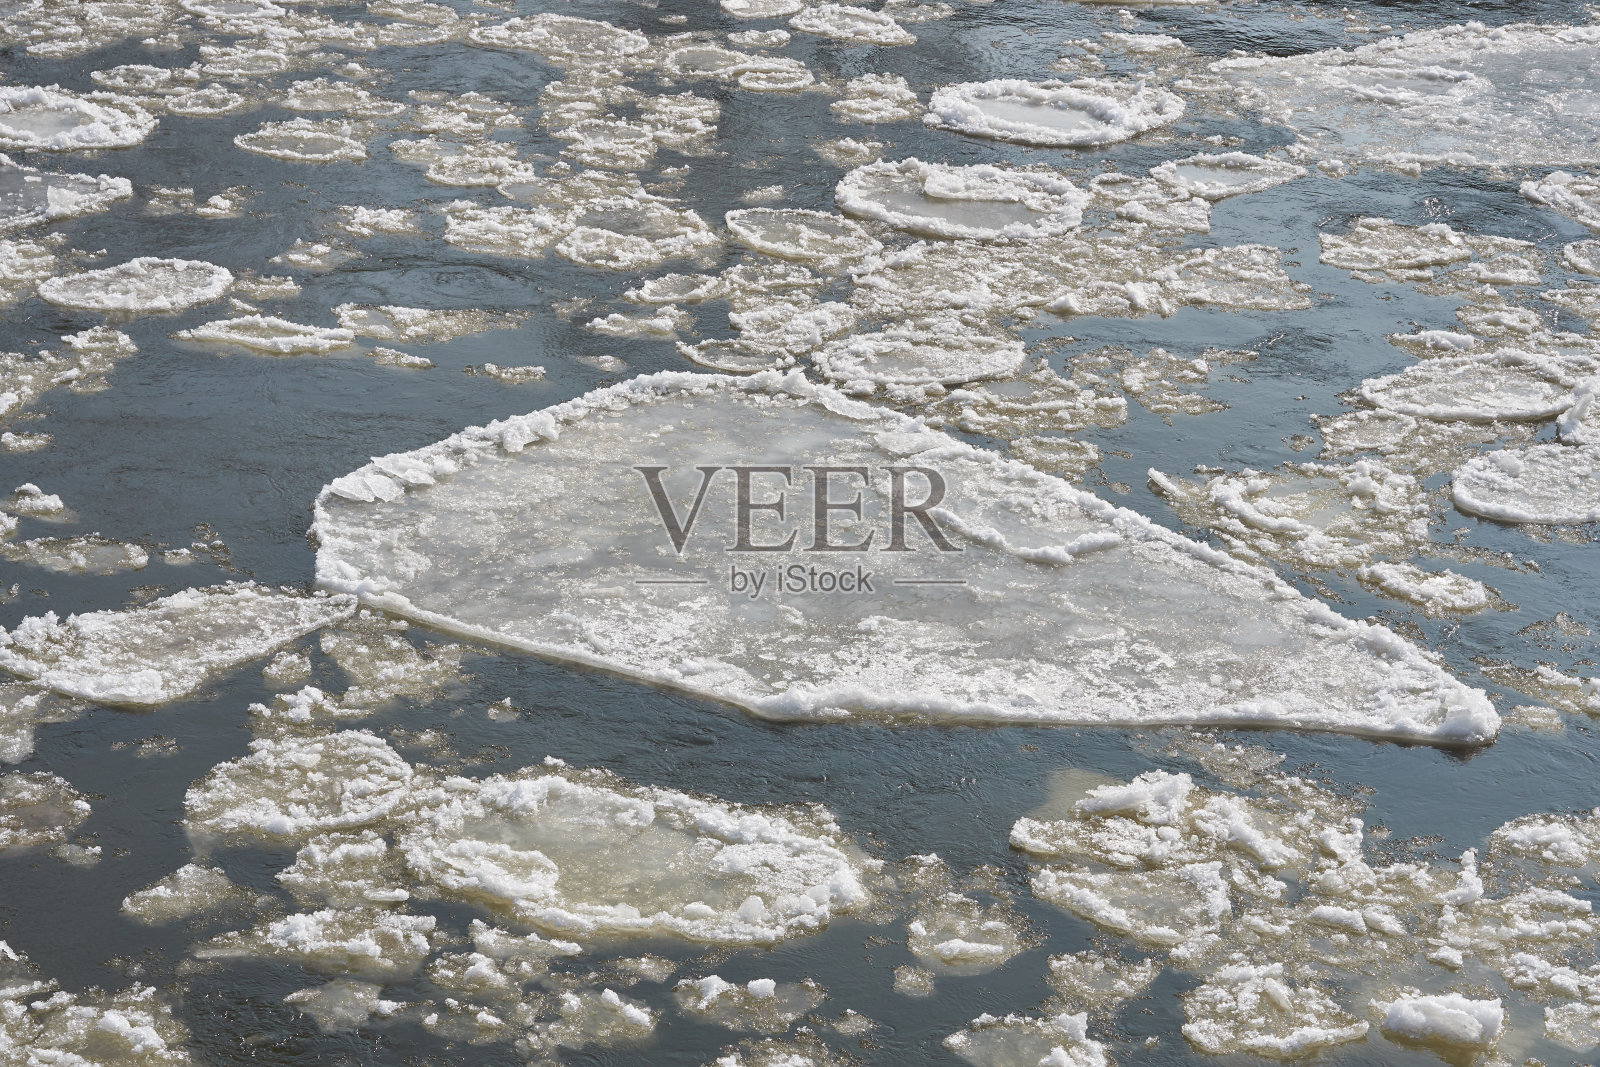 冬季的一天，马格德堡附近易北河上的浮冰照片摄影图片